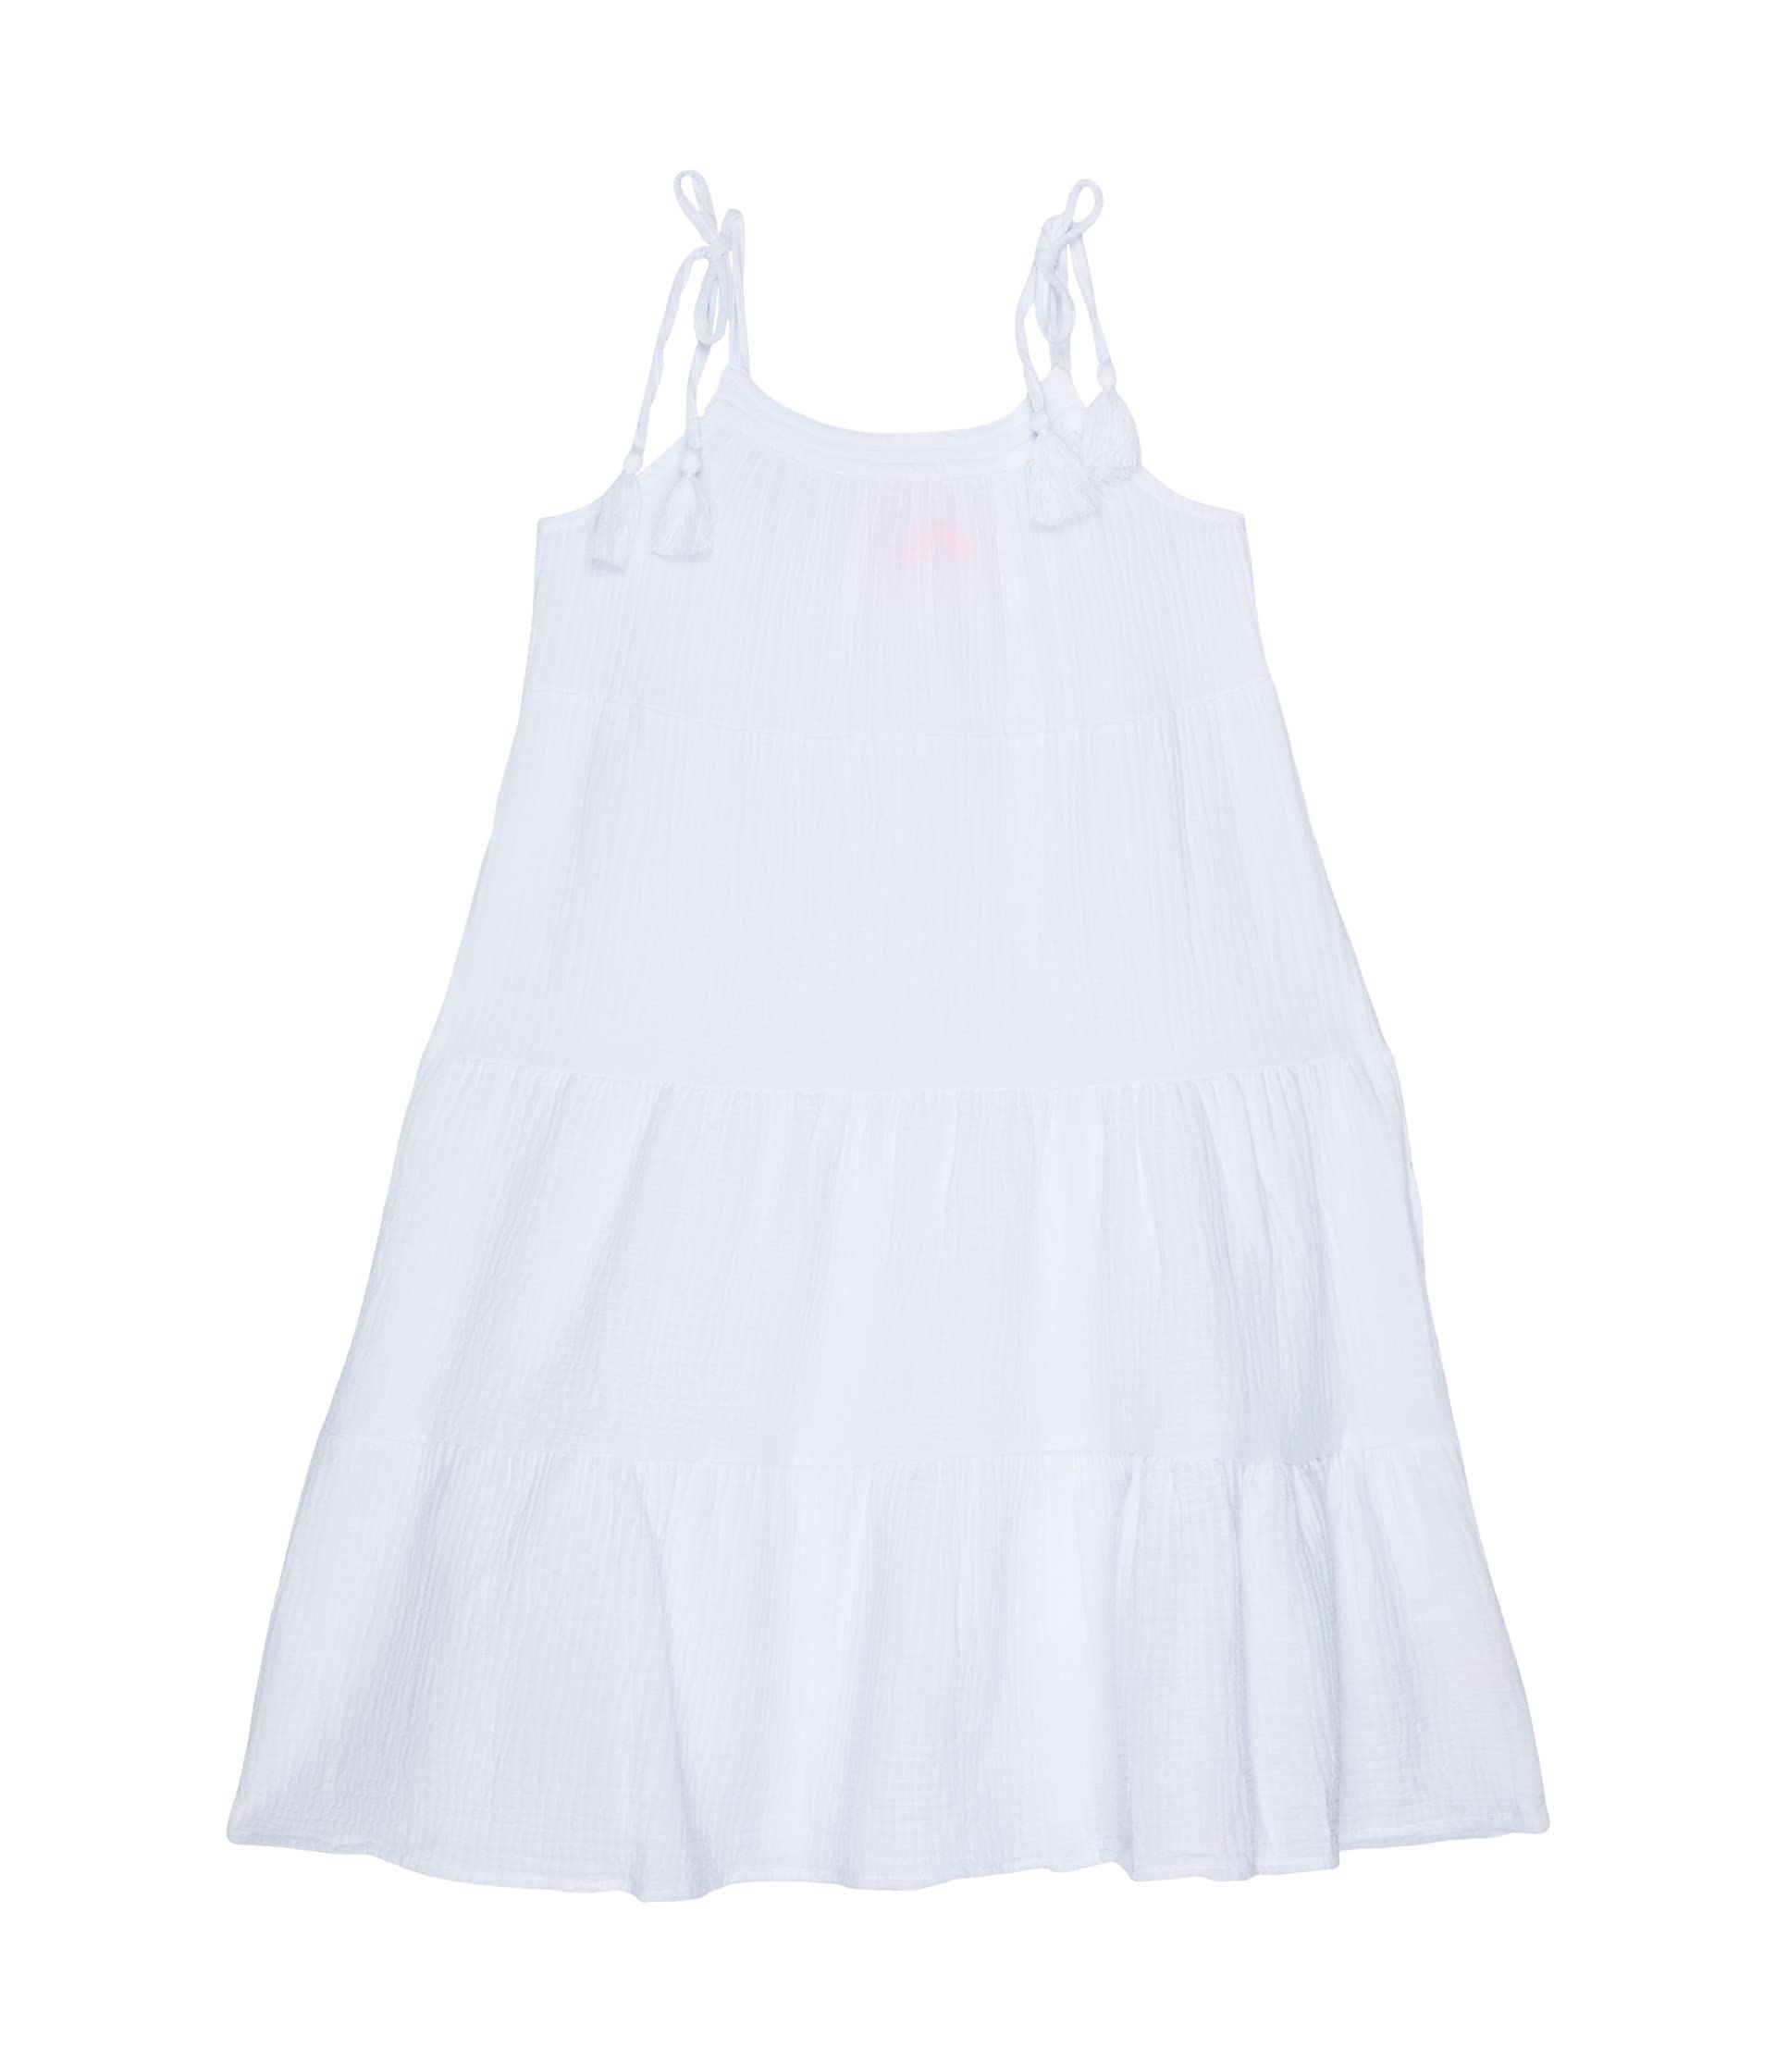 Ярусное платье без рукавов Mini Me Portofino (для больших детей) Seafolly Kids